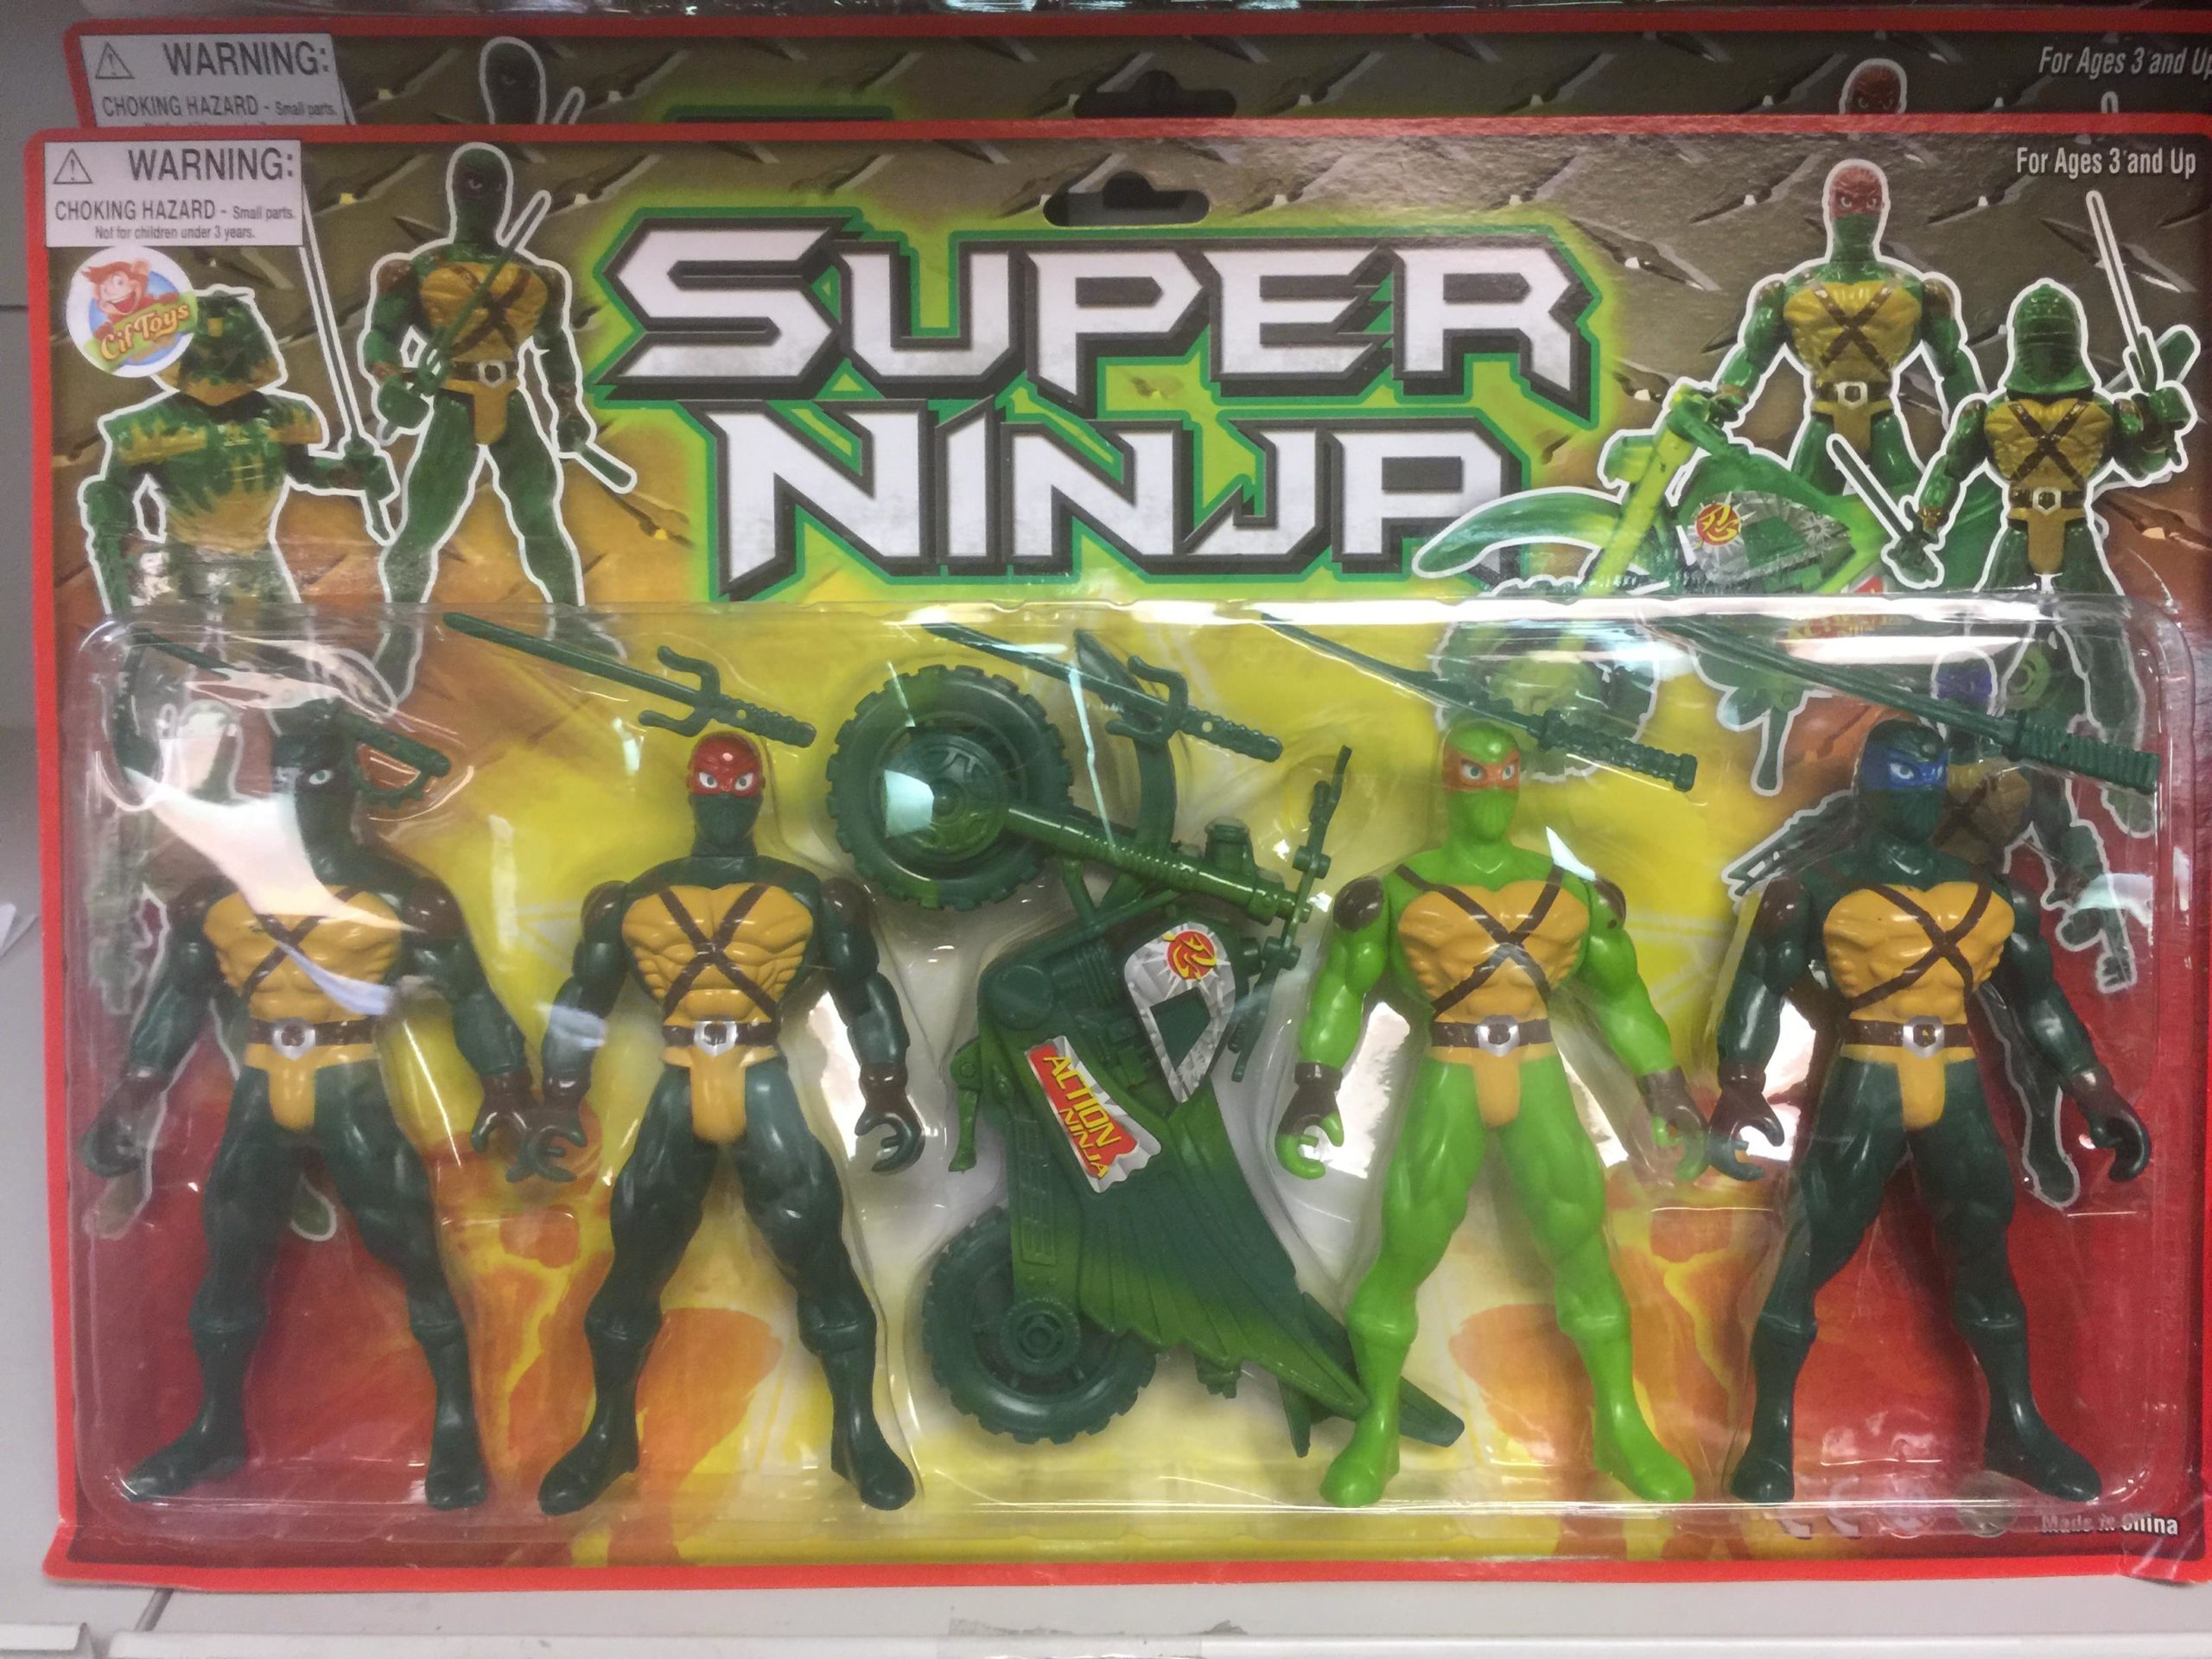 ninja toy figures